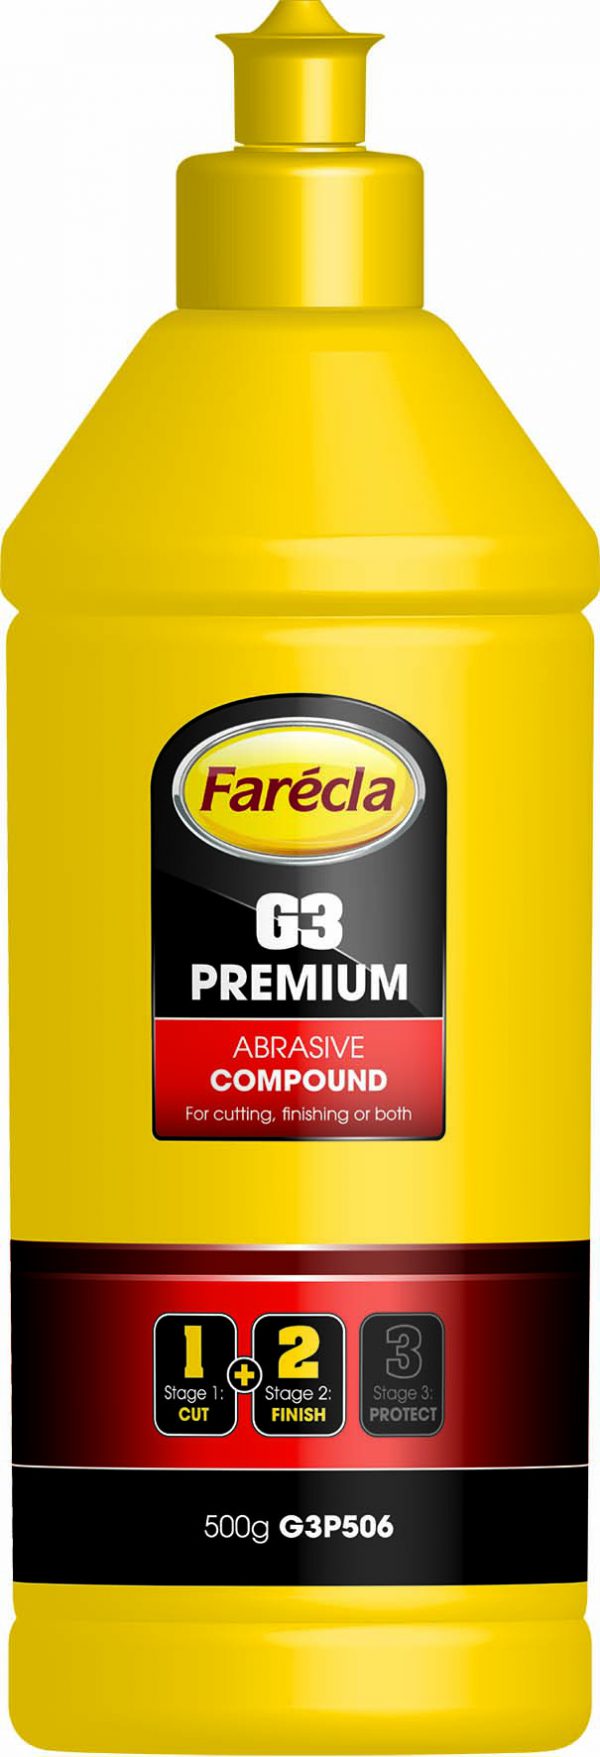 Farecla Pasta polerska w płynie G3 Premium Abrasive Compound 500g